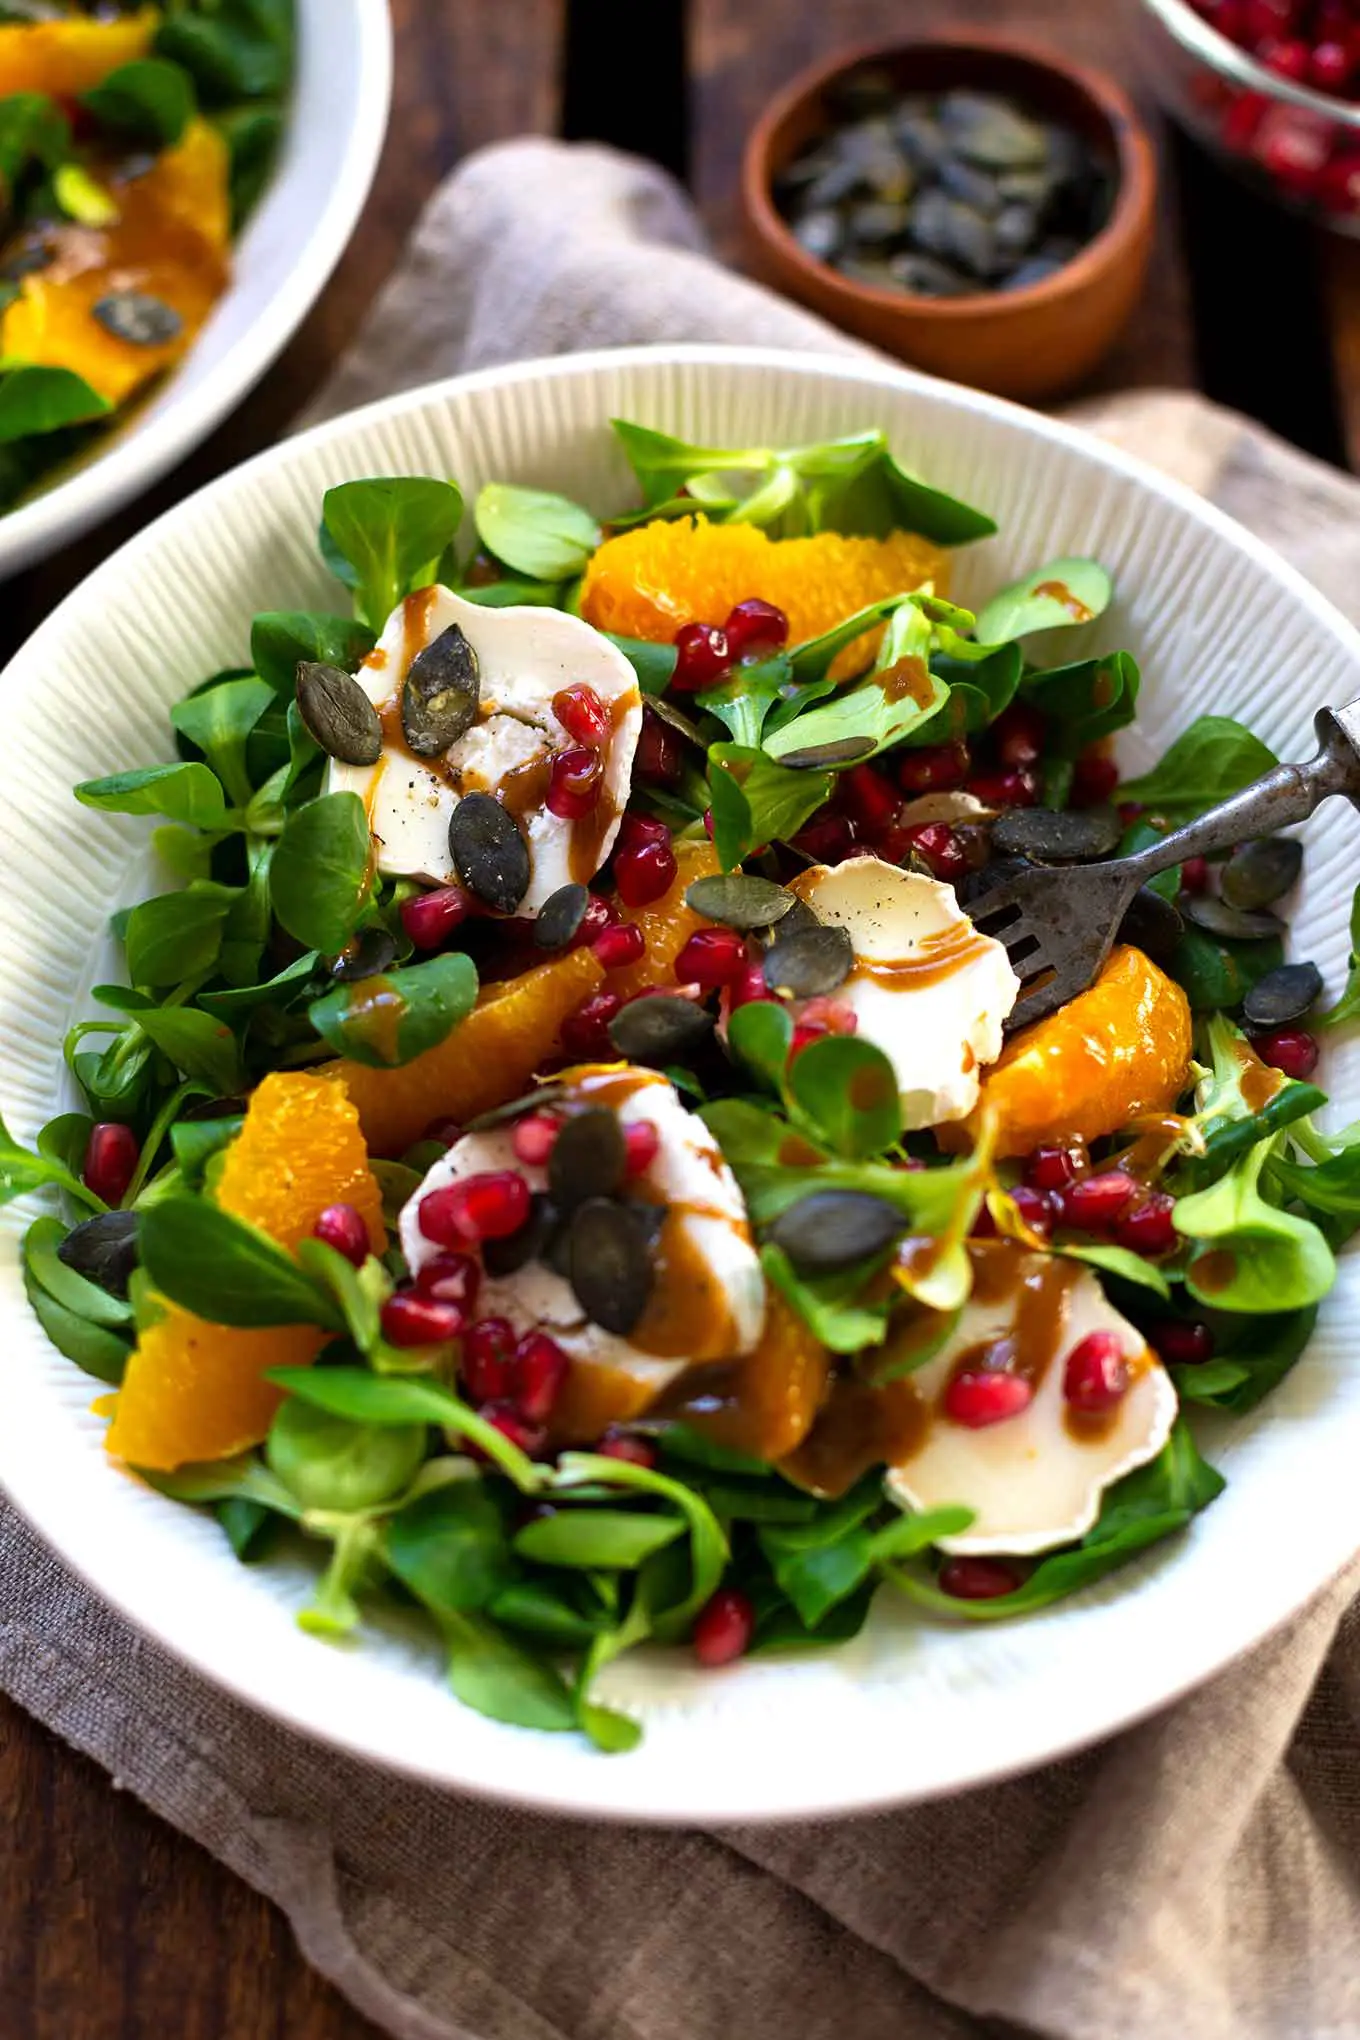 Rezept: Wintersalat mit Orangen, Granatapfel und Ziegenkäse - Kochkarussell - dein Foodblog für schnelle und einfache Feierabendküche